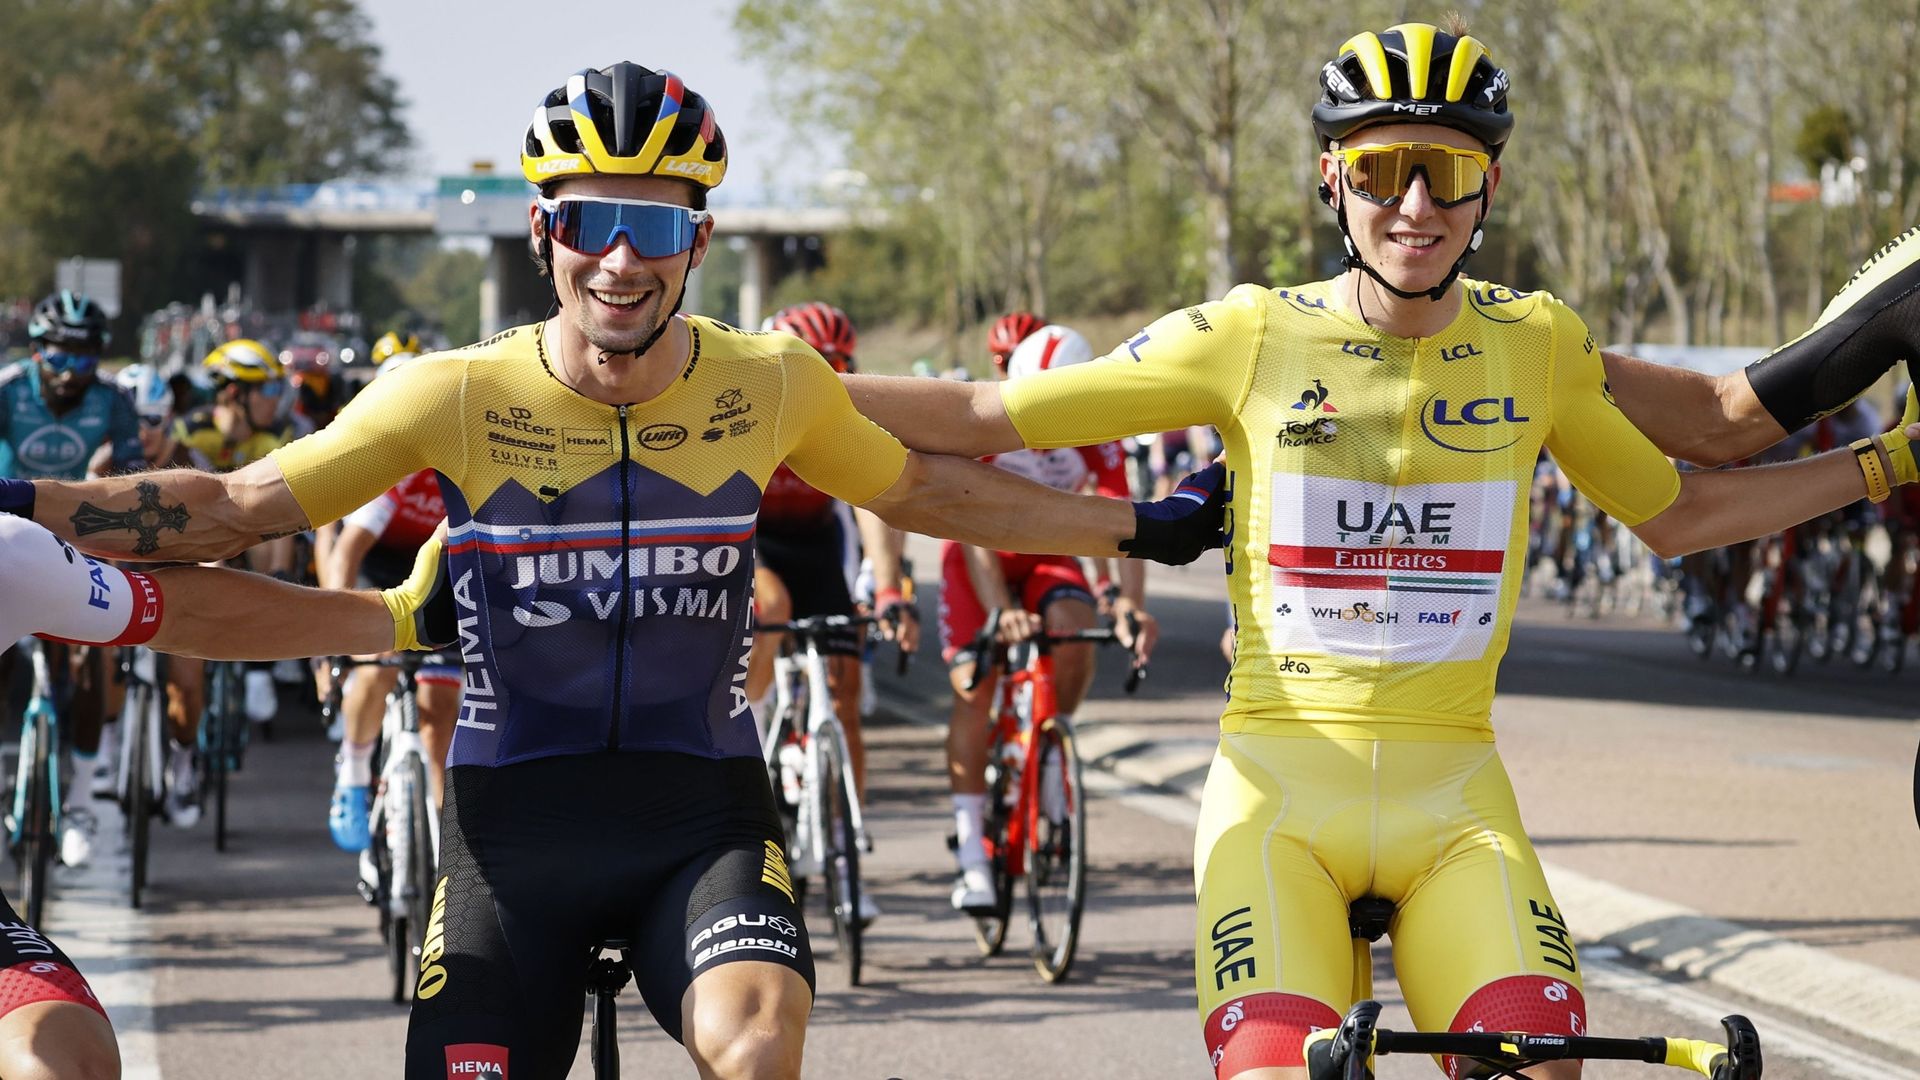 Primoz Roglic et Tadej Pogacar défilent bras dessous, bras dessous, après le premier doublé slovène sur le Tour de France en 2020. Depuis lors la Slovénie a encore renforcé sa domination dans le cyclisme international.